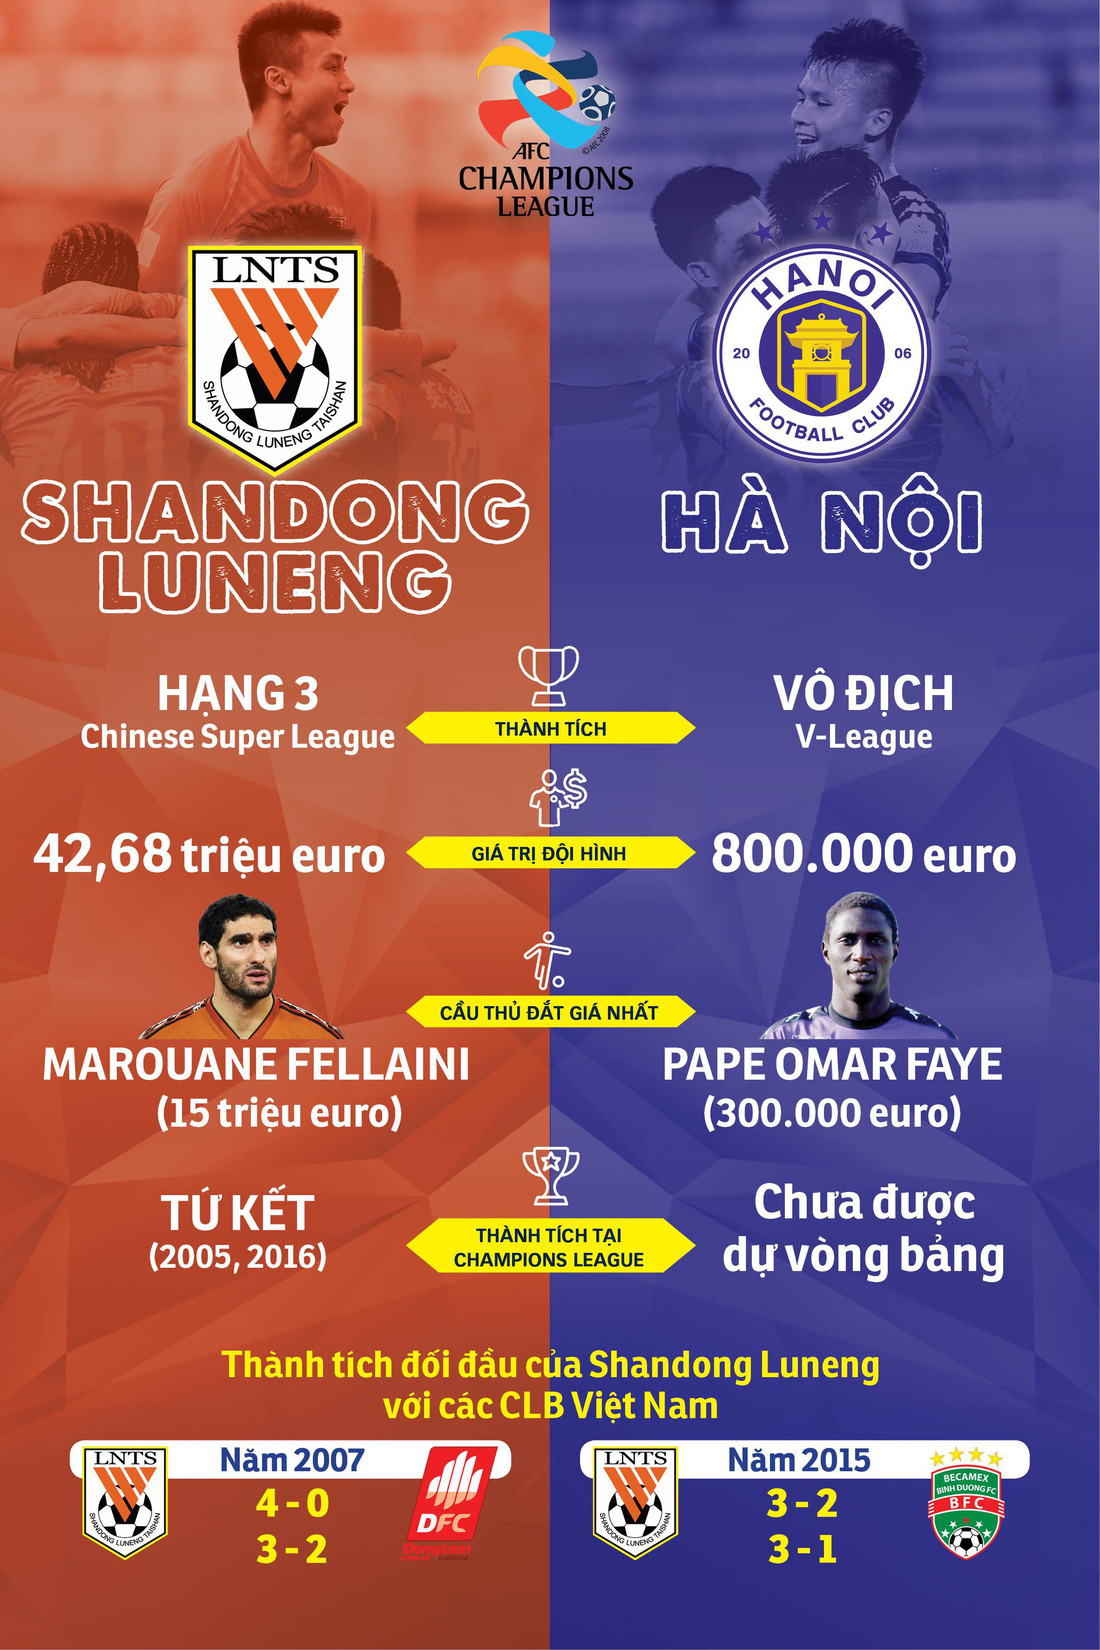 Shandong Luneng mạnh hơn Hà Nội FC như thế nào? - Ảnh 1.